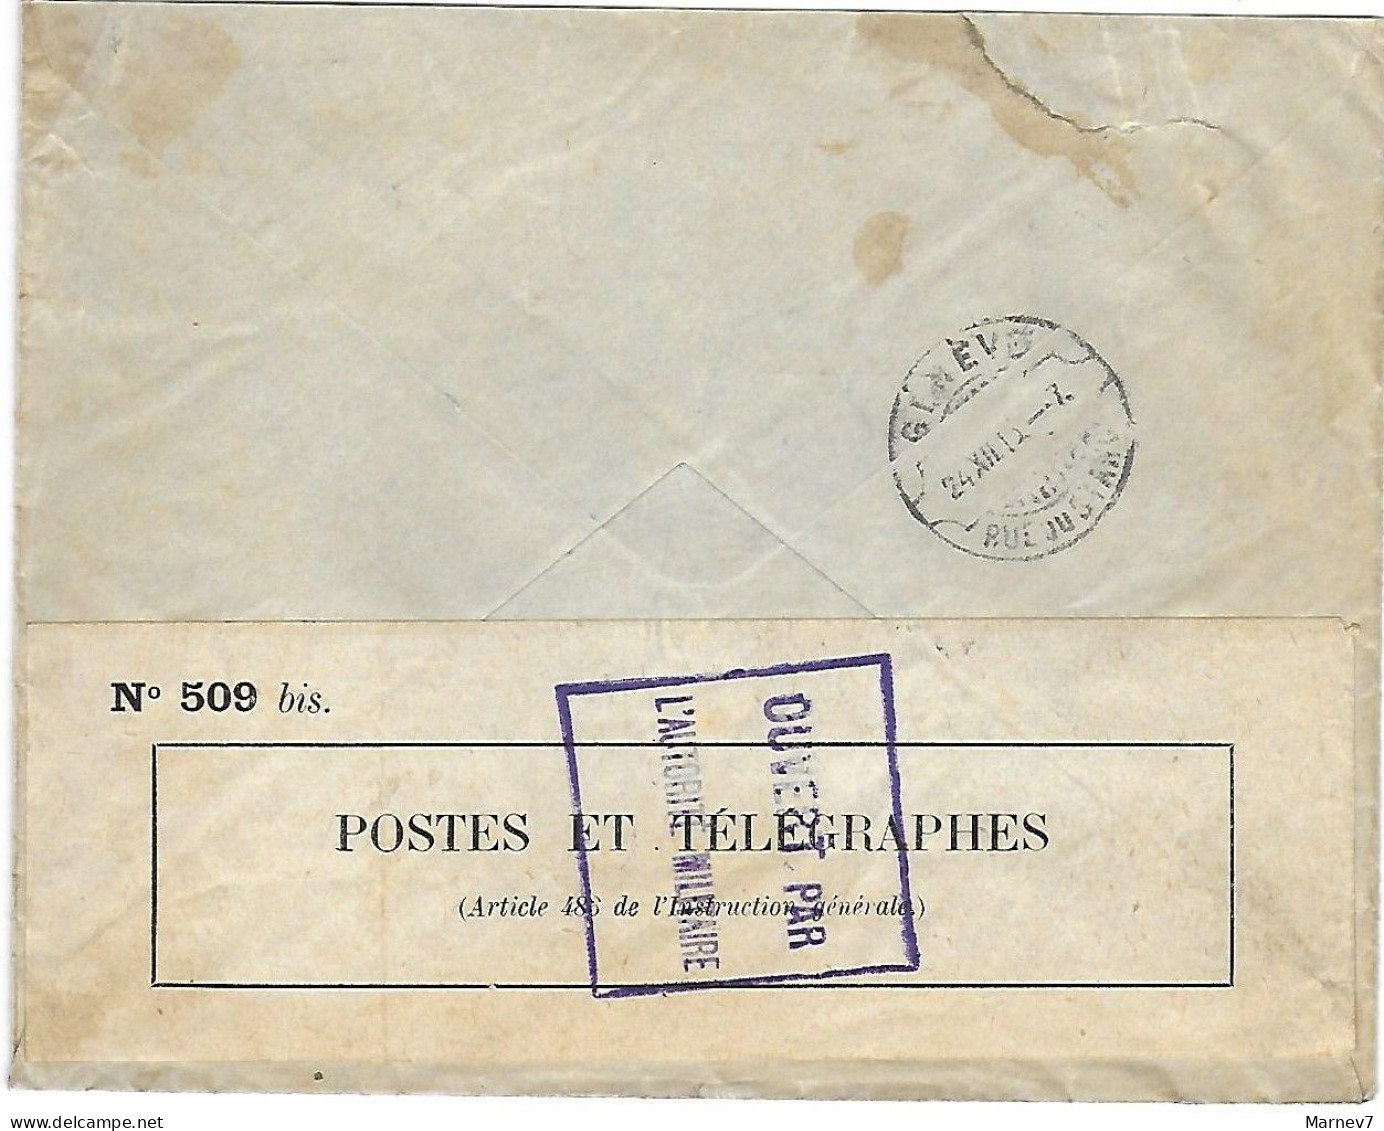 Lettre Recommandée De Paris à Genève 20 12 1915 - Censurée Censure - Contrôle Postal PONTARLIER - Ministère De La Guerre - Covers & Documents